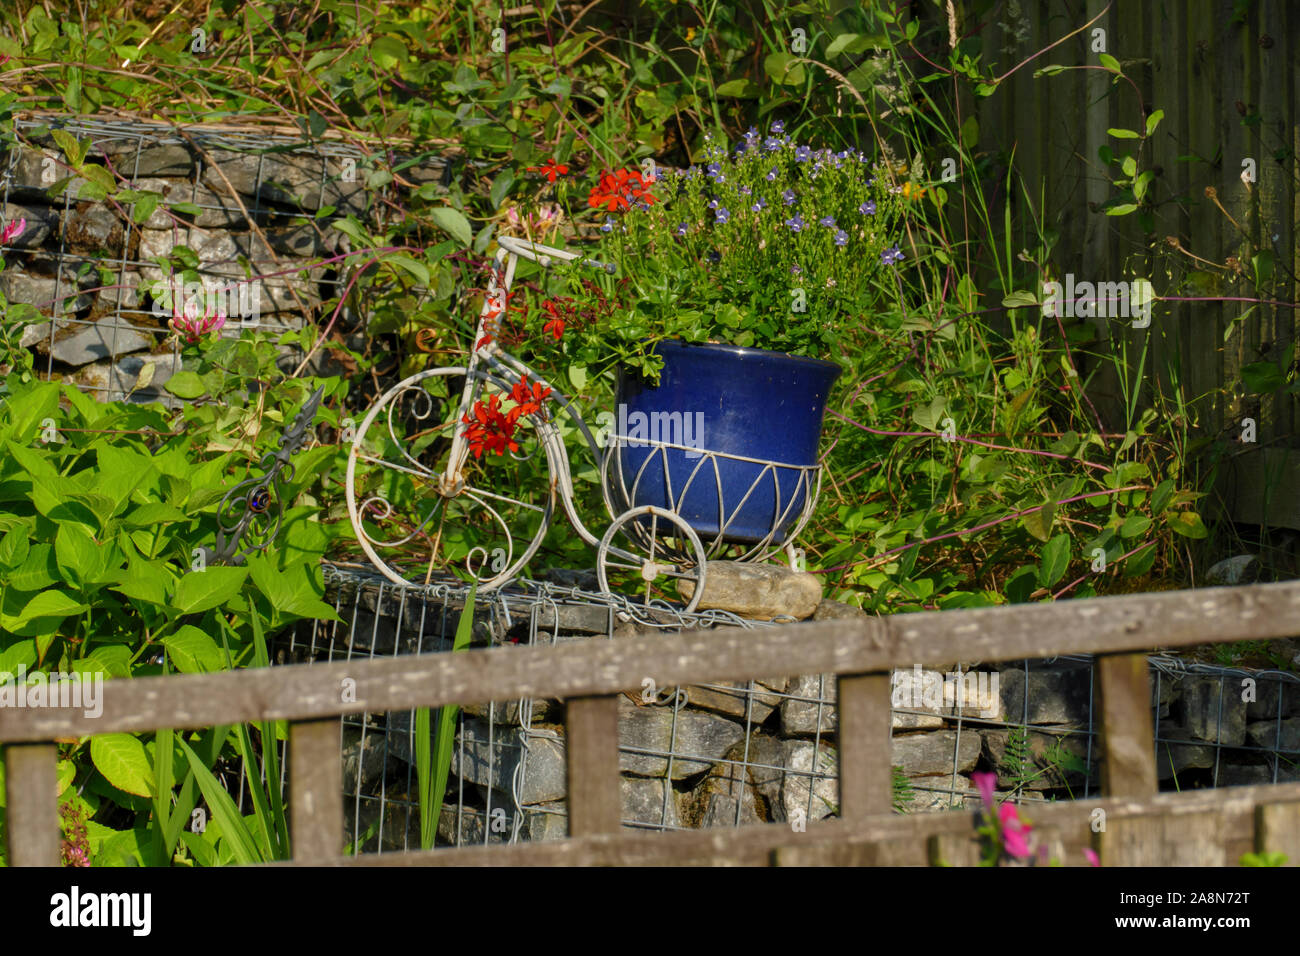 Pflanzen und andere Blumen in ein Deko Dreirad gepflanzt Foto Stock